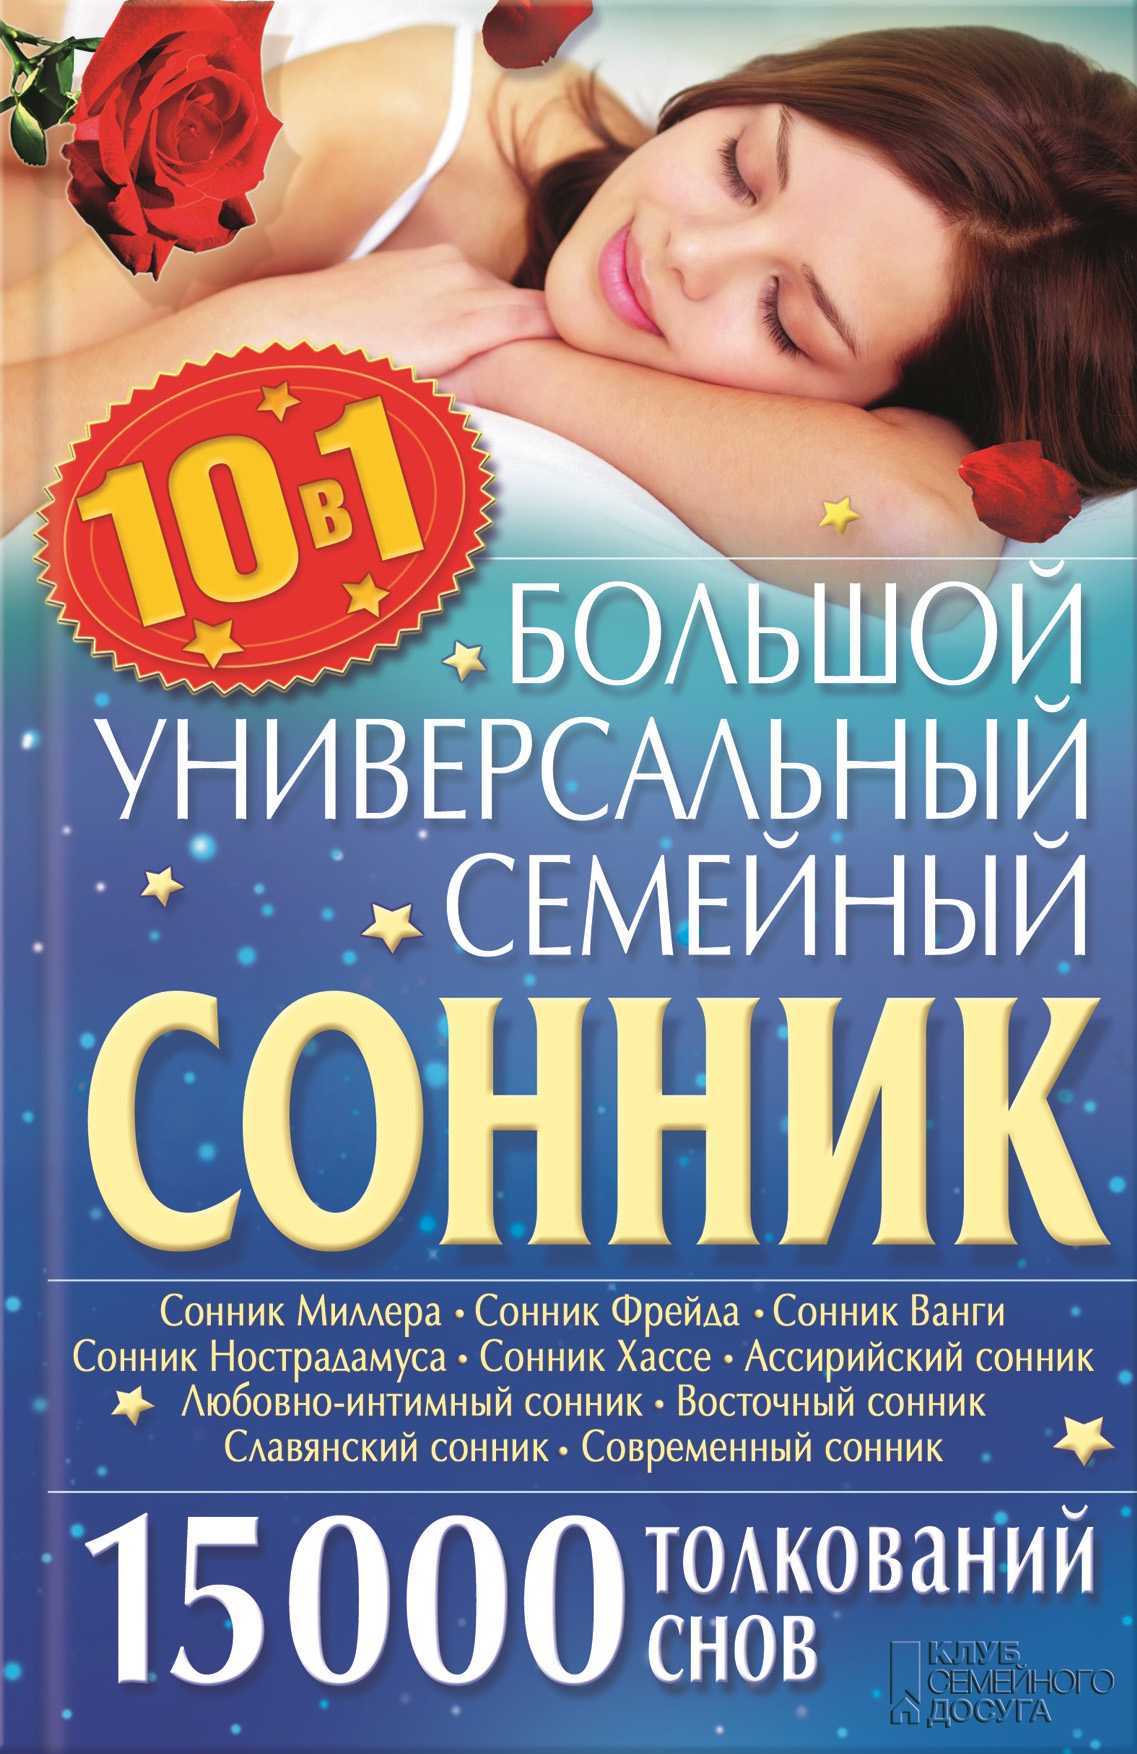 Онлайн сонник - толкование снов бесплатно и без регистрации sonnik.expert